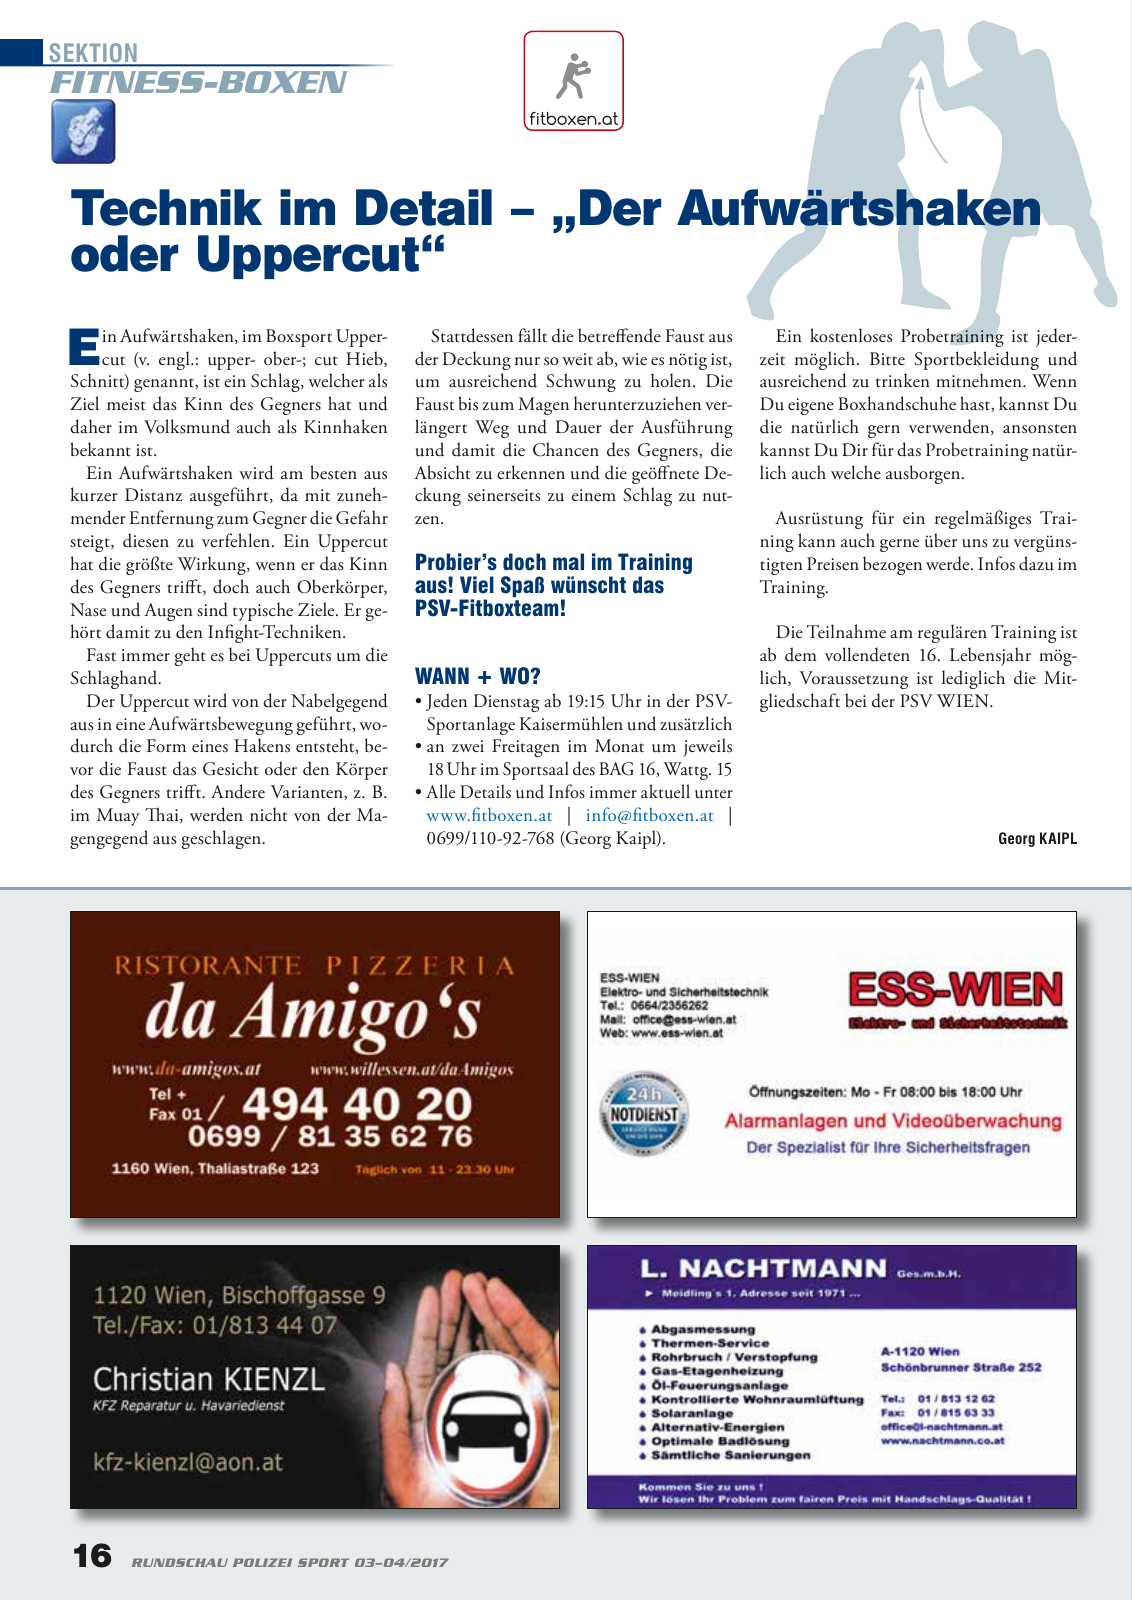 Vorschau Rundschau Polizei Sport 03-04/2017 Seite 16